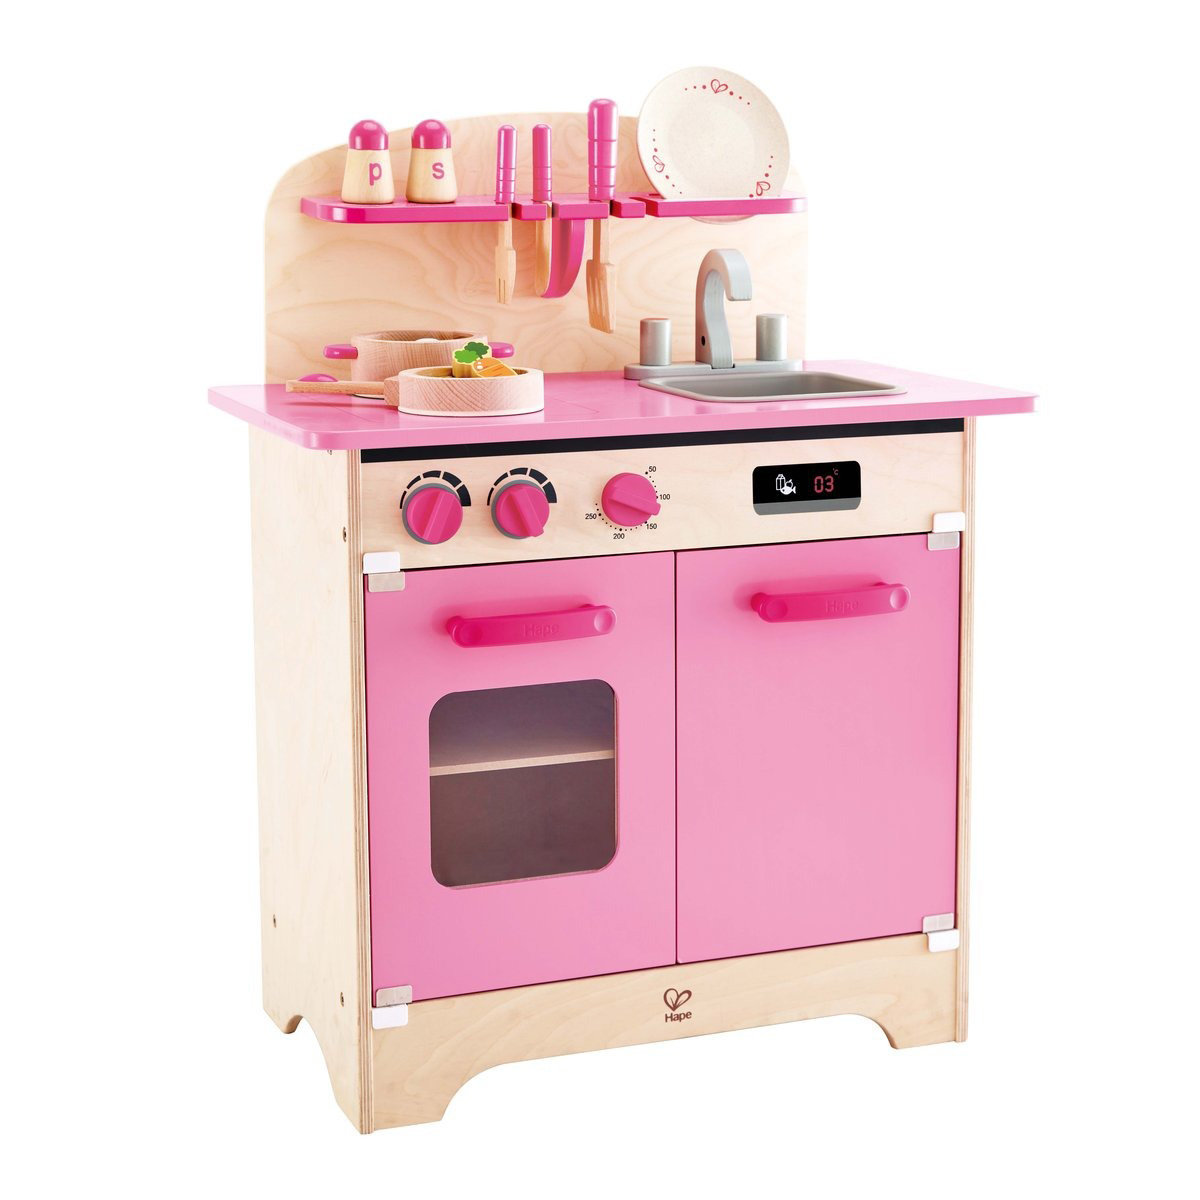 粉紅色美食家廚房 | 連廚具 | 廚房玩具 | 煮飯仔 | E8381